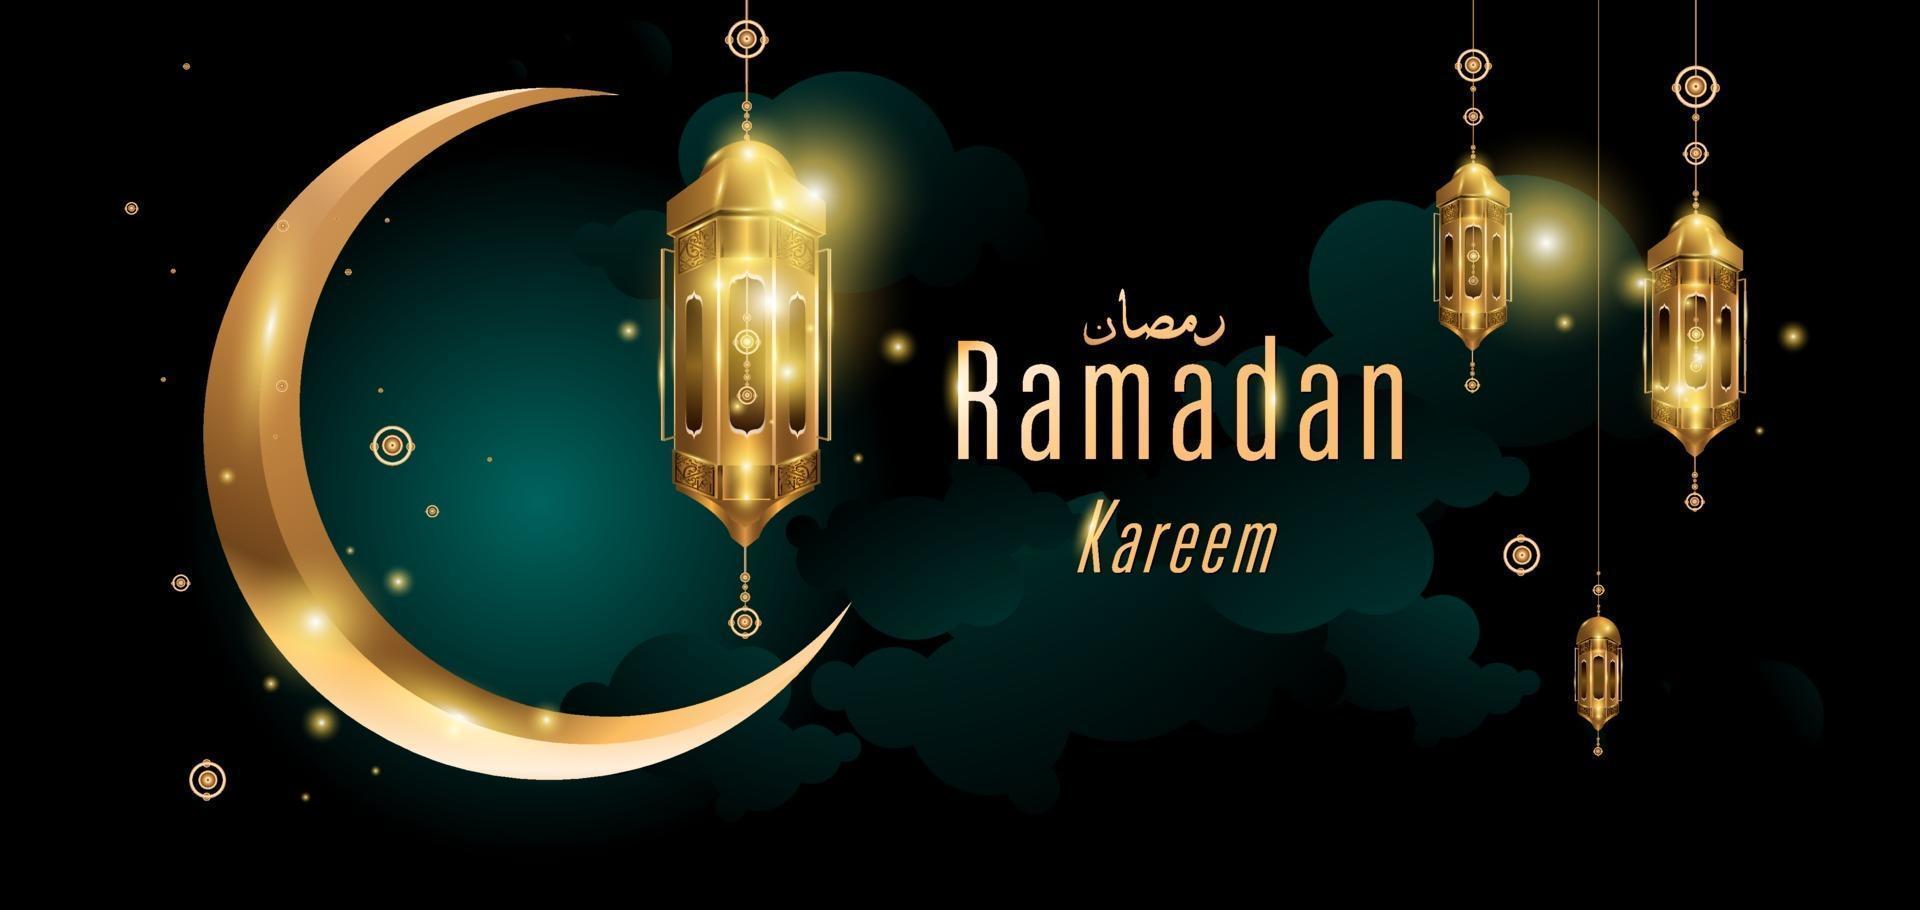 cartão de felicitações da mesquita dourada islâmica ramadan kareem vetor